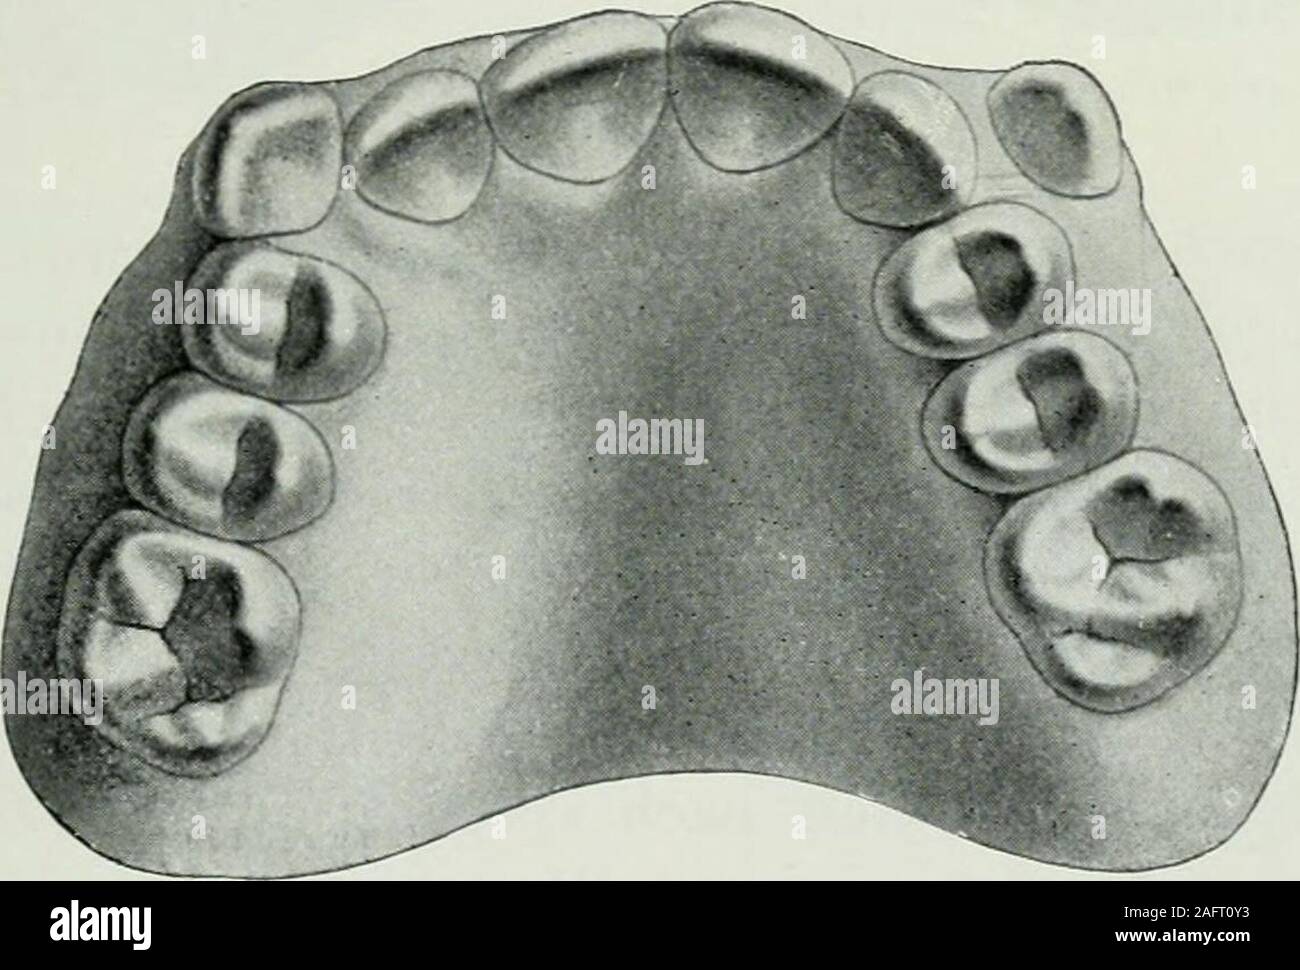 . Lehrbuch der orthodontie fur studierende und zahnartze mit enschluss der geschichte der orthodontie. Fig. 208. bemerkt, um so nachteiliger, als gerade diese Zähne auf denäußeren Eindruck der Physiognomie den größten Einfluß aus-üben. Fig. 209 gibt den hierzu gehörigen Oberkiefer von der Kau-. Fig. 209. fläche aus gesehen wieder. Wie die Dehnung vorgenommen wurde,zeigt Fig. 210, welche die Ansicht des Oberkiefers von unten mitangelegtem Apparate (Dehnung nach der Seite und nach vorne)darstellt. Nach der bereits erläuterten Methode wurde eineDehnung vorgenommen, und die vier Schneidezähne hier Stock Photo